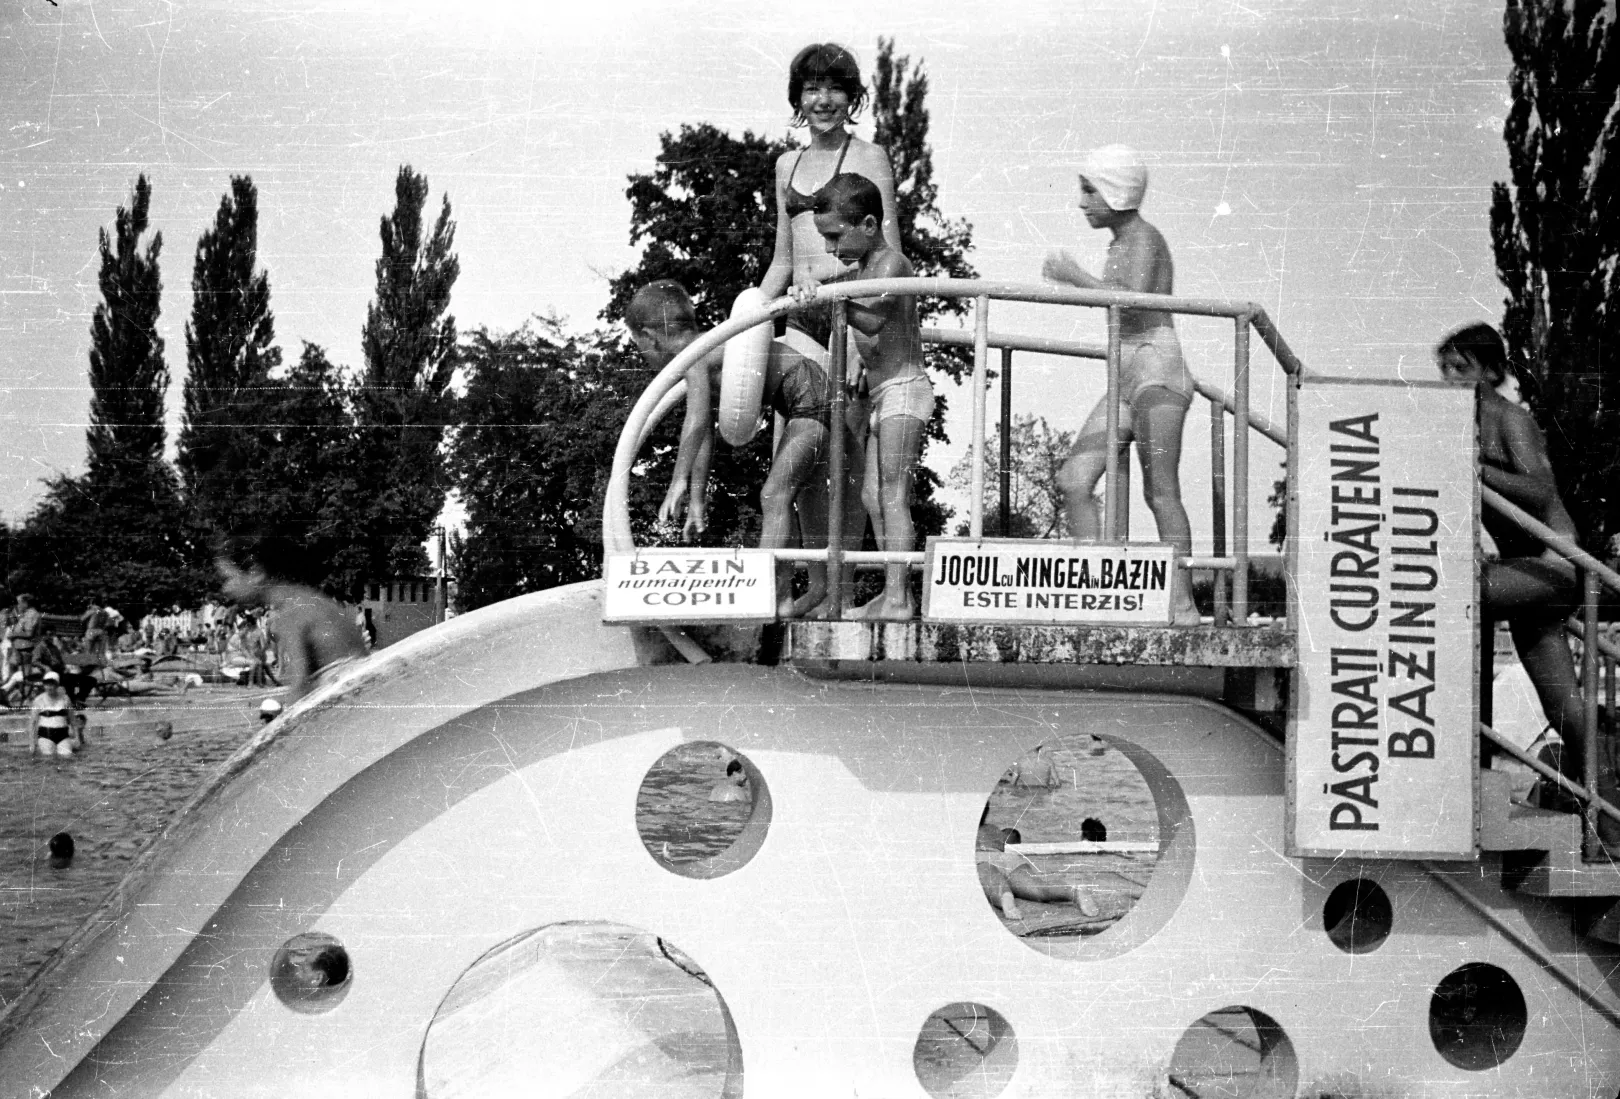 Félixfürdői hangulatkép 1964-ből – Fotó: Szőcs Tamás / Azopan Fotóarchívum